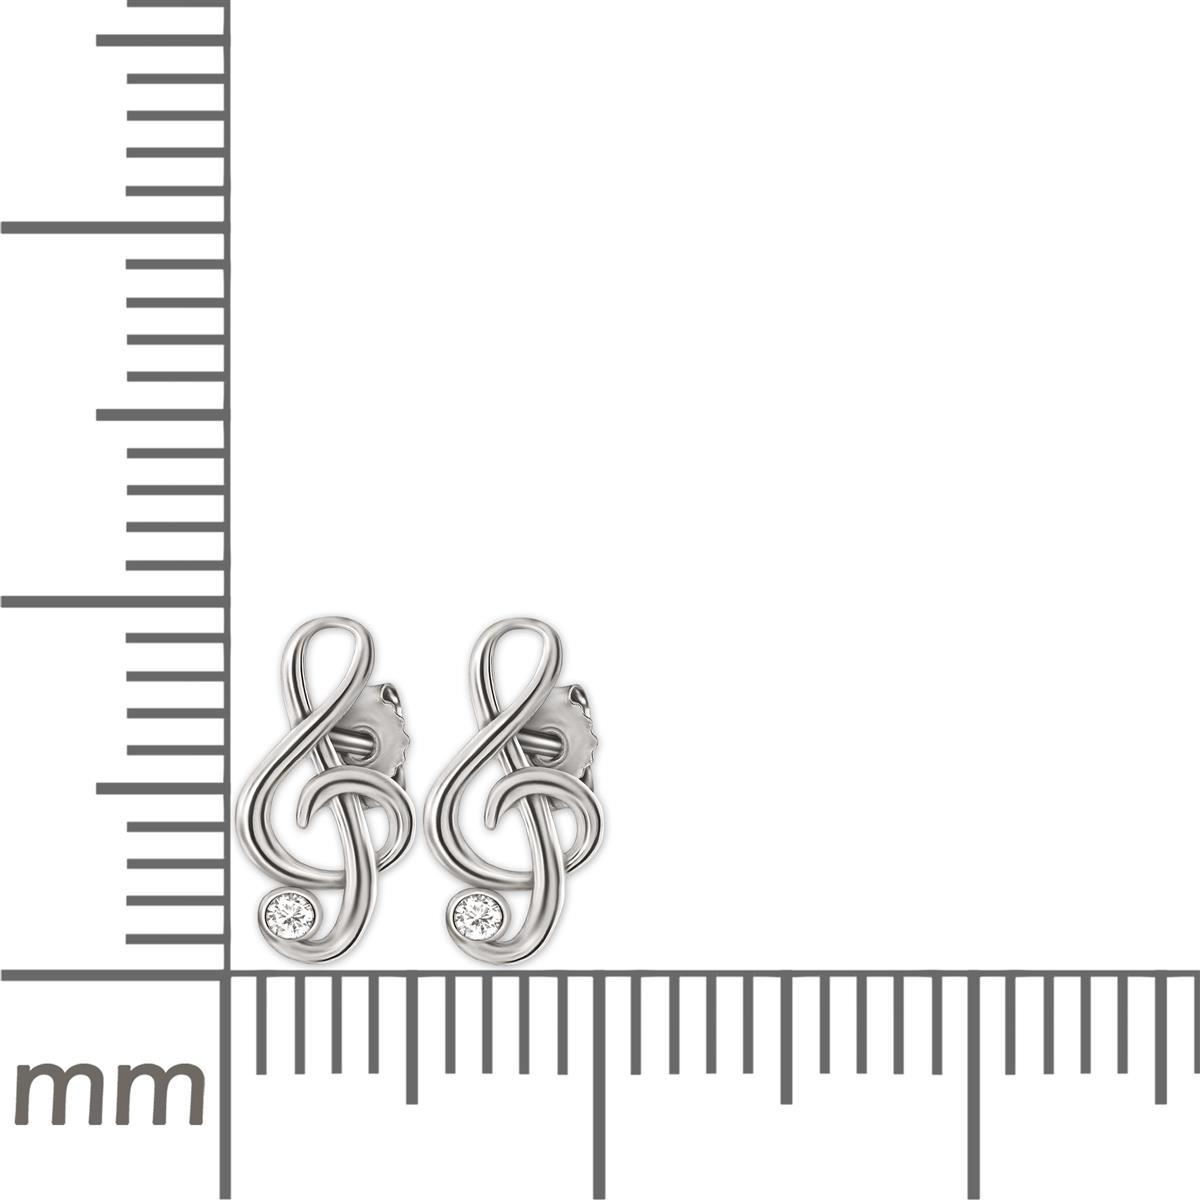 Silberne Ohrstecker Mini Notenschlüssel 9 x 5 mm elegant mit Zirkonia weiß glänzend STERLING SILBER 925